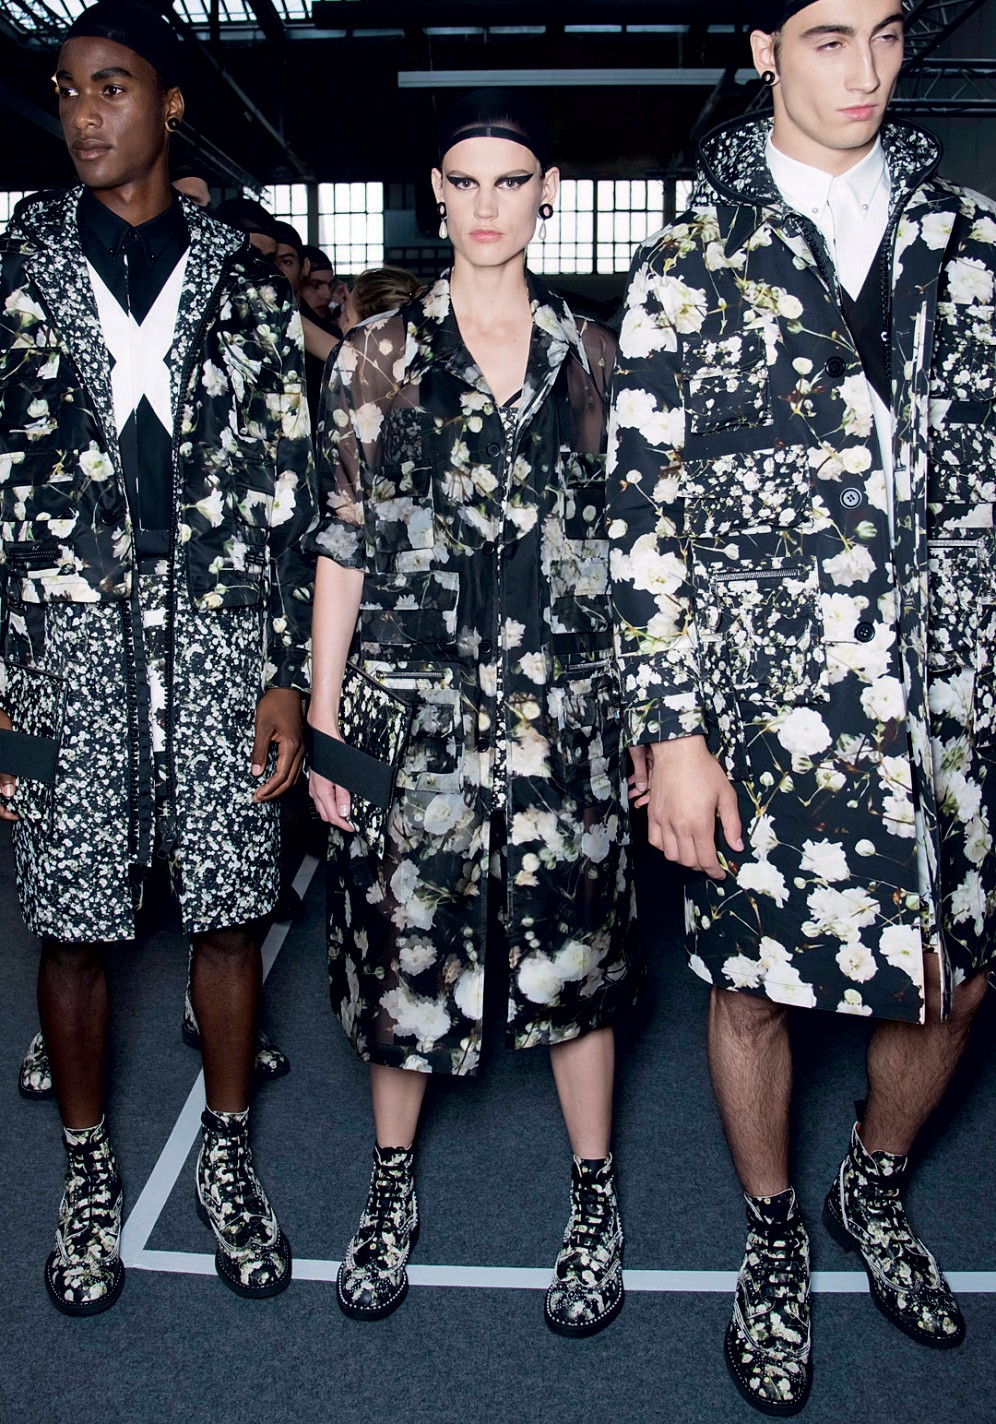 O unissex foi destaque na passarela da Givenchy (Foto: IMAX TREE, MARCIO MADEIRA E DIVULGAÇÃO)